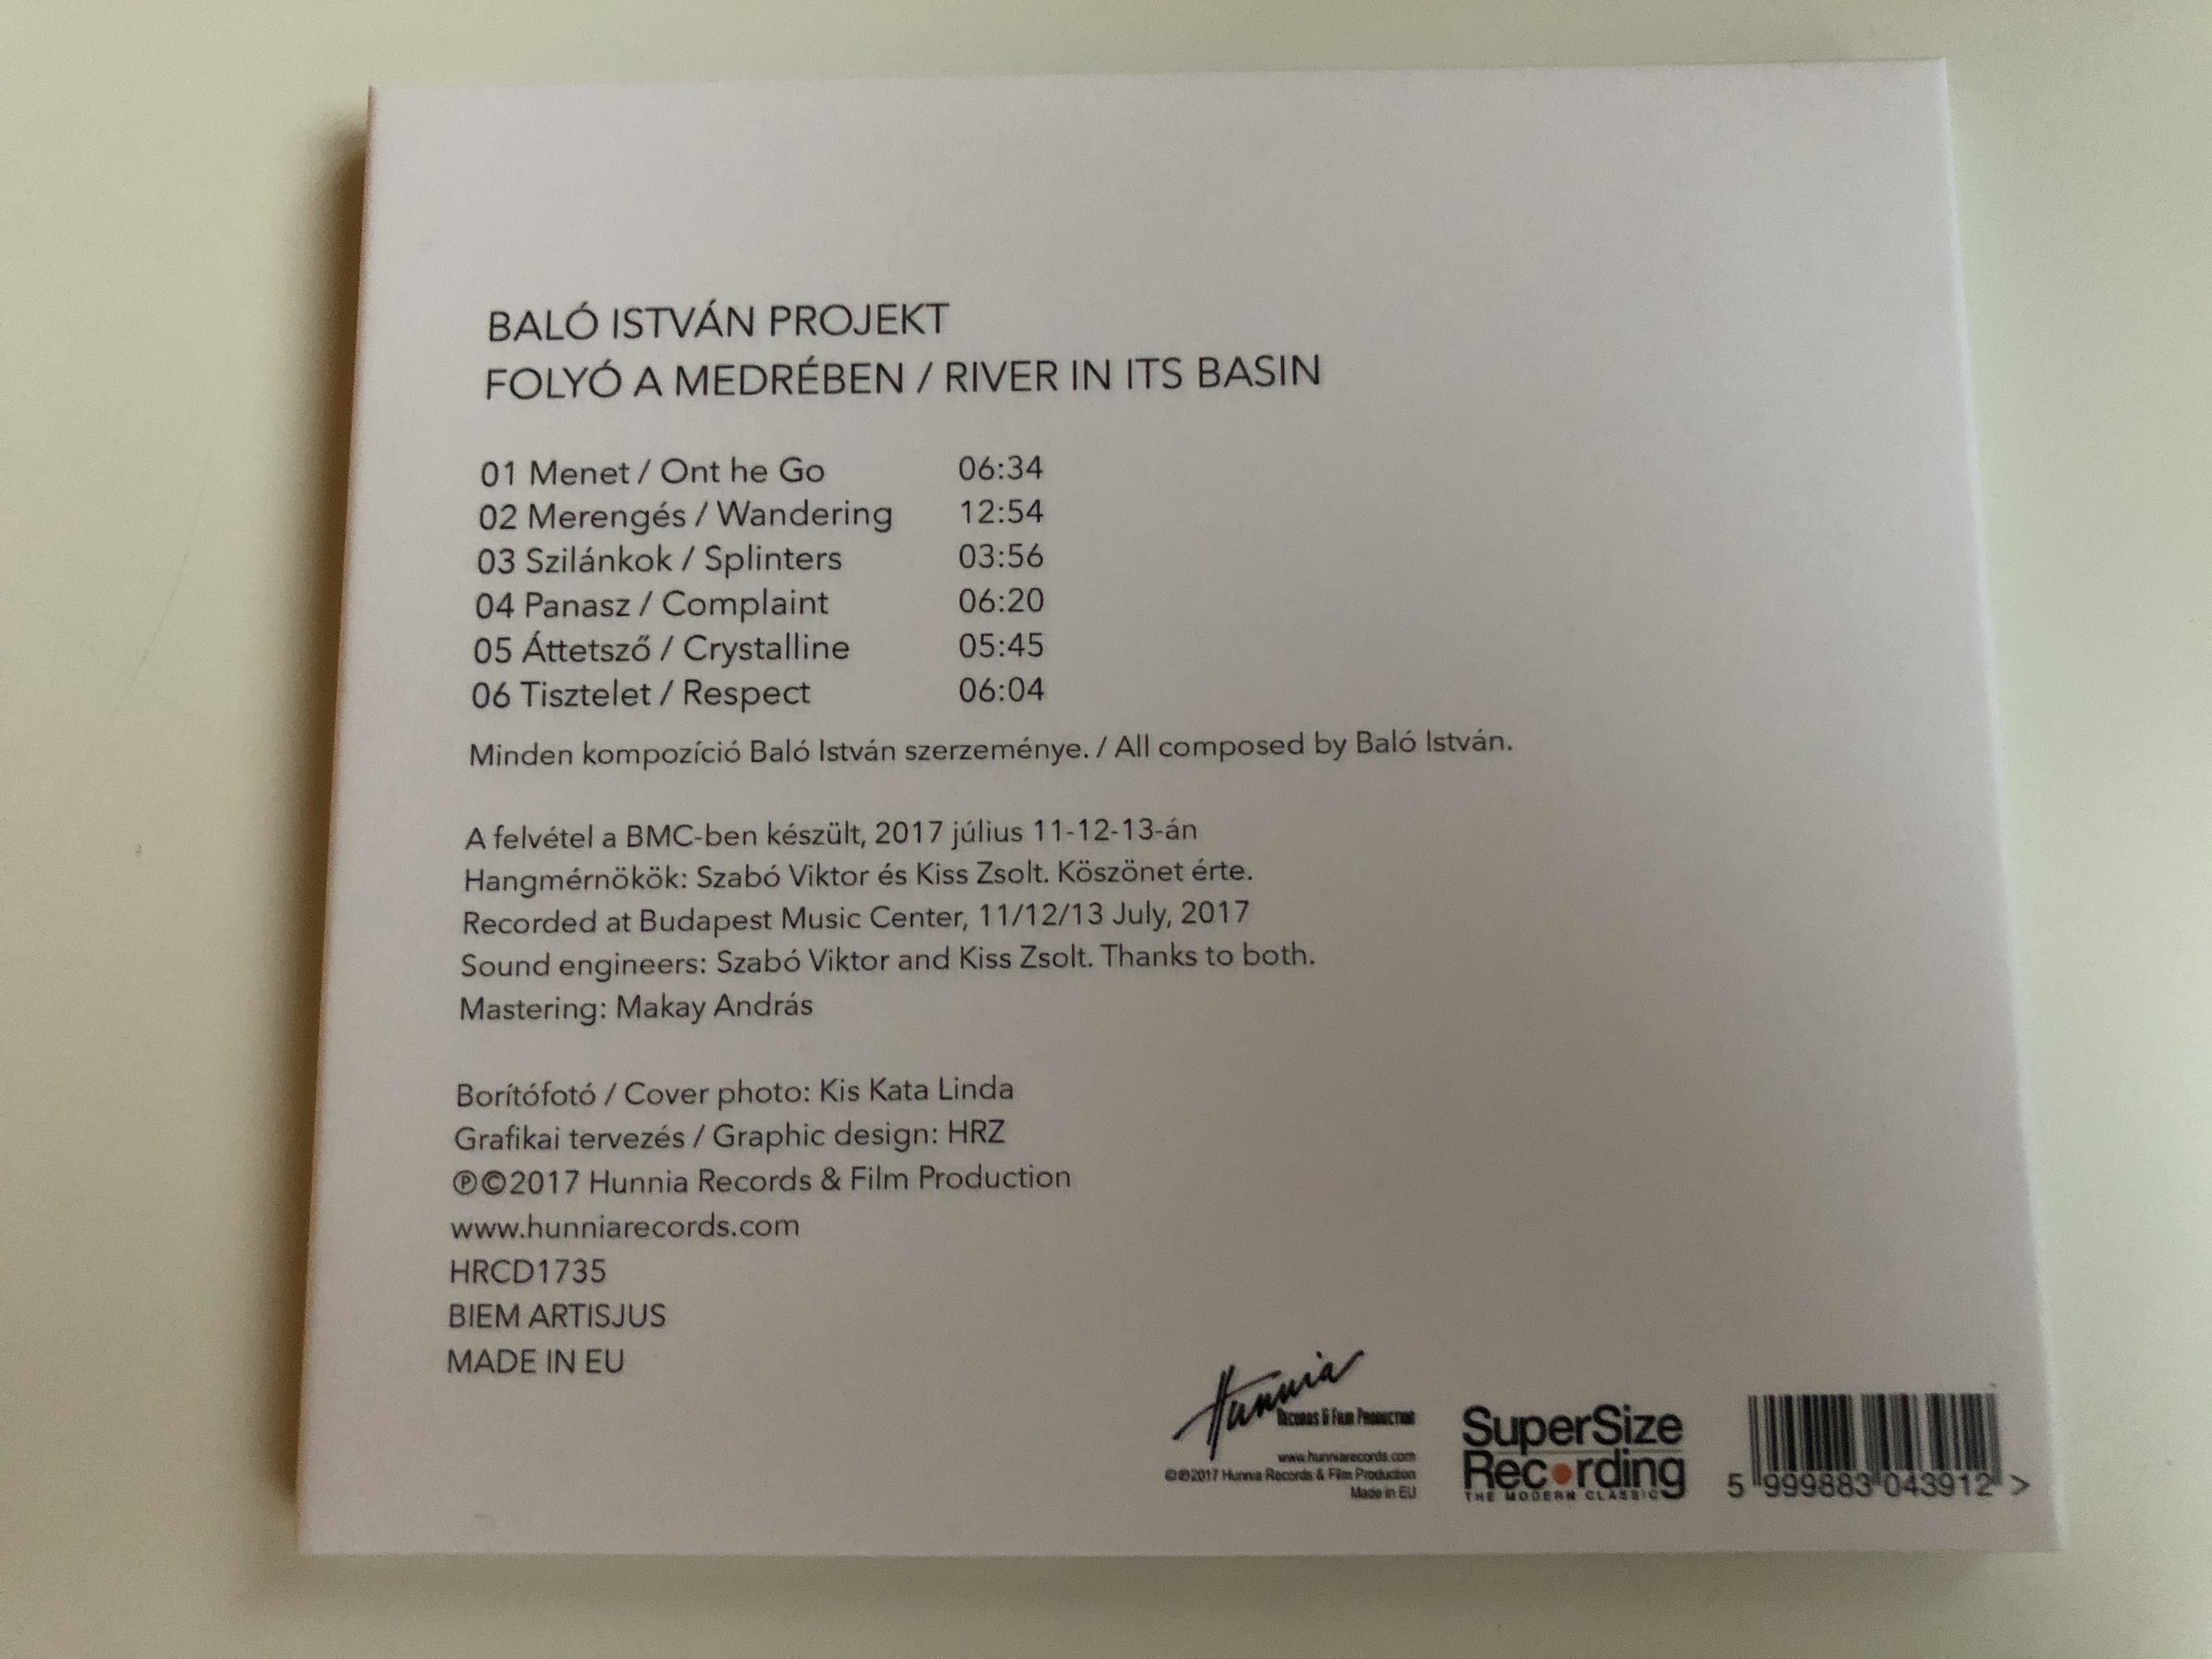 balo-istvan-projekt-folyo-a-medreben-hunnia-records-film-production-audio-cd-2017-hrcd1735-5-.jpg